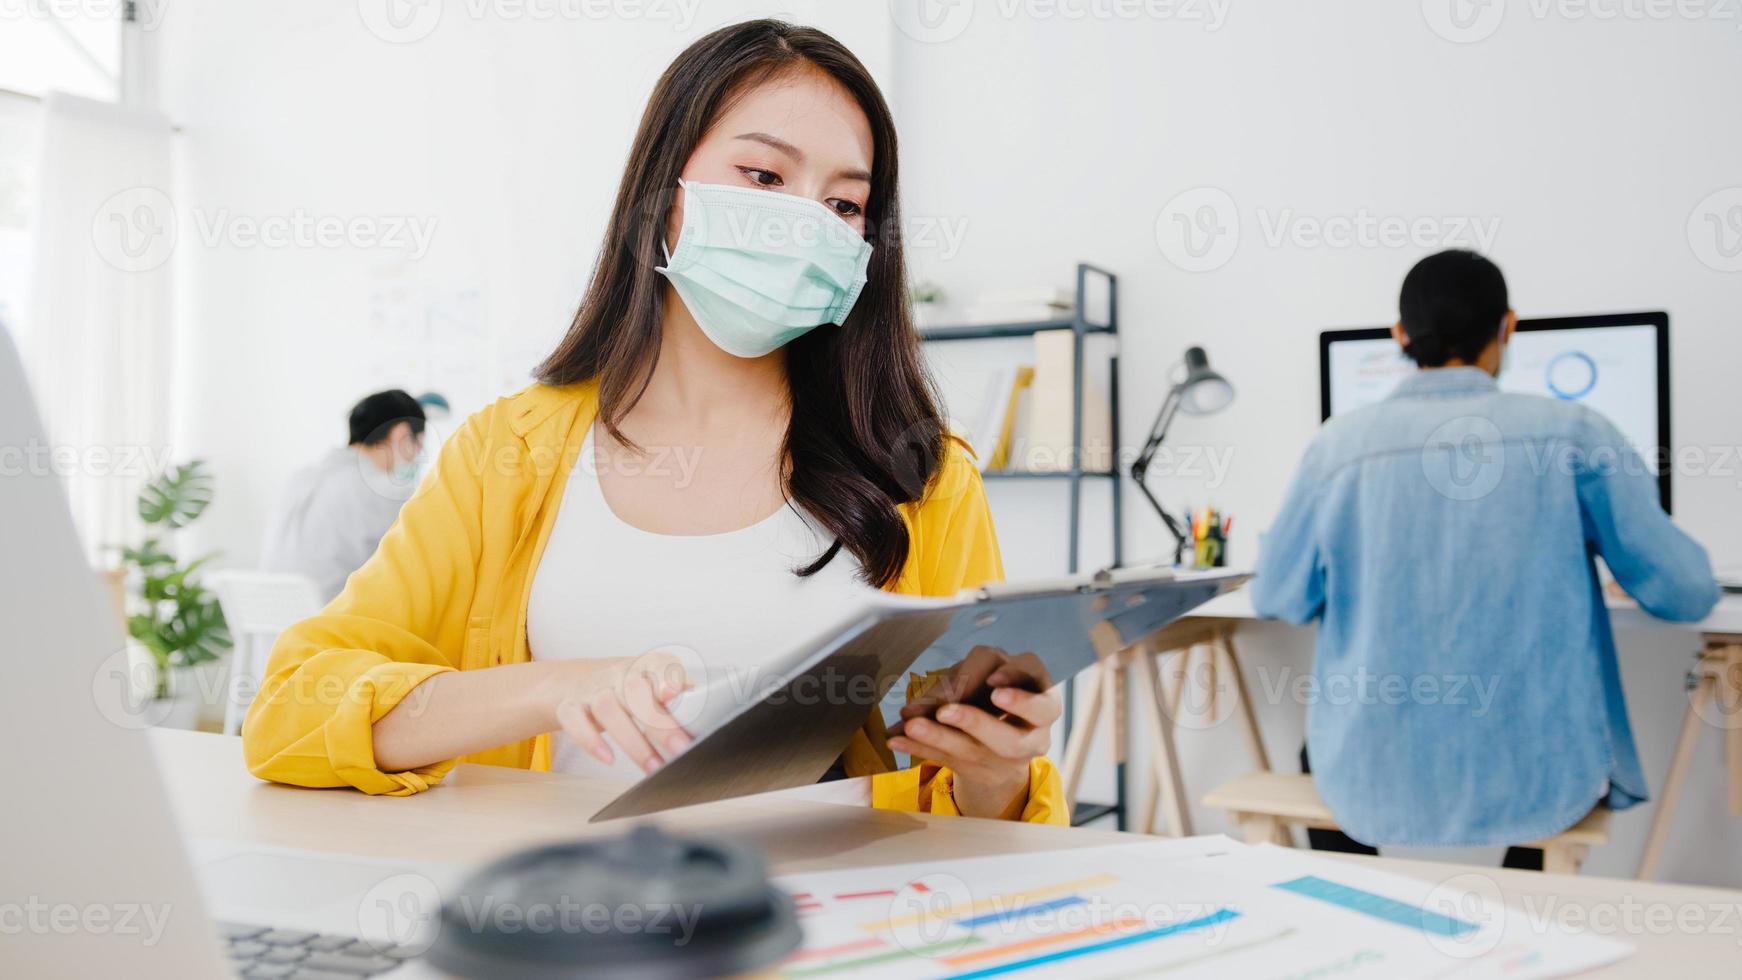 azië zakenvrouw ondernemer met medisch gezichtsmasker voor sociale afstand in nieuwe normale situatie voor viruspreventie tijdens het gebruik van laptop terug op het werk op kantoor. levensstijl na het coronavirus. foto